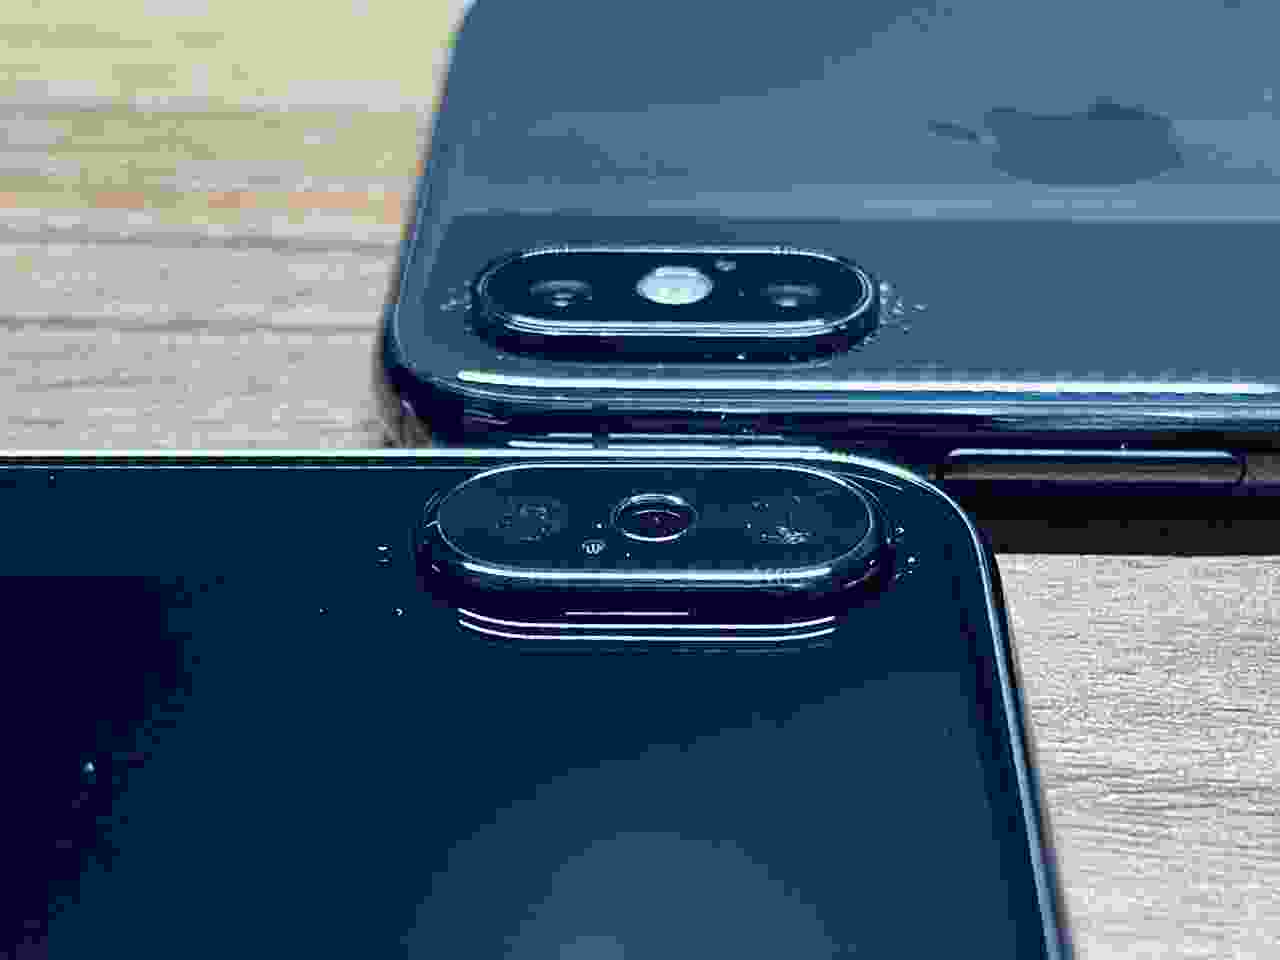 iPhone X màu đen: Với thiết kế viền nhôm sang trọng và màu đen đẳng cấp, iPhone X màu đen chính là điều mà bạn cần để thể hiện sự thịnh vượng và đẳng cấp của mình.